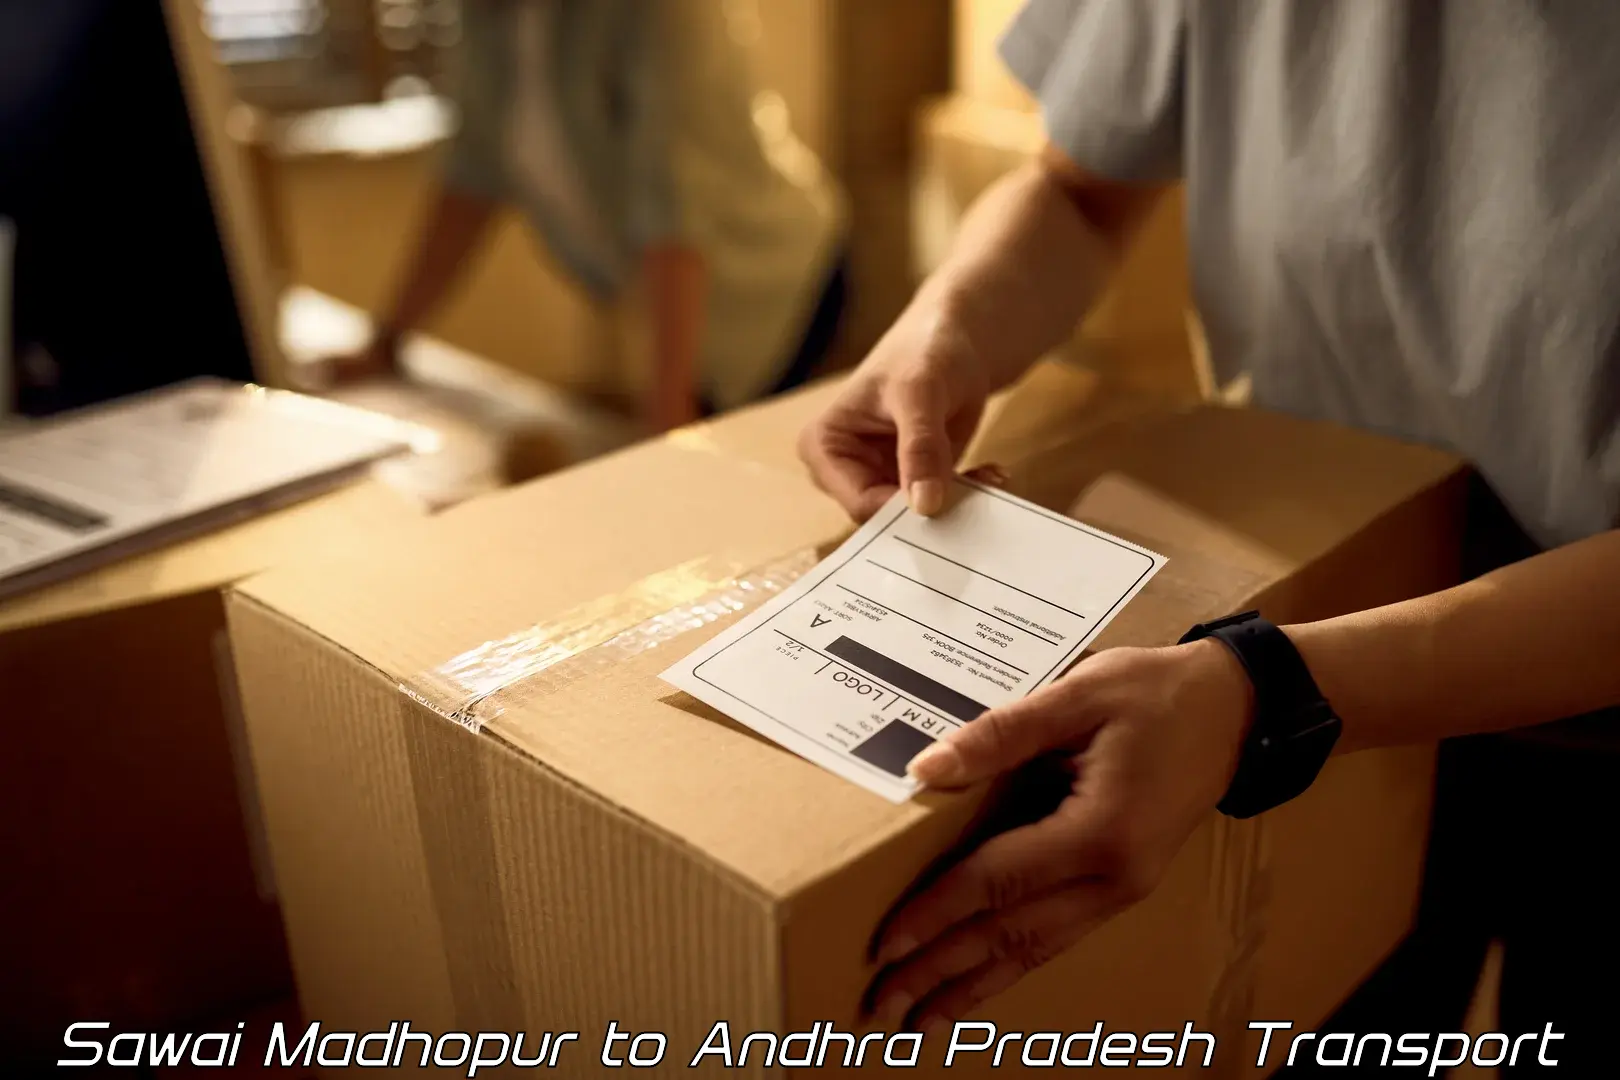 Shipping partner Sawai Madhopur to Rajahmundry